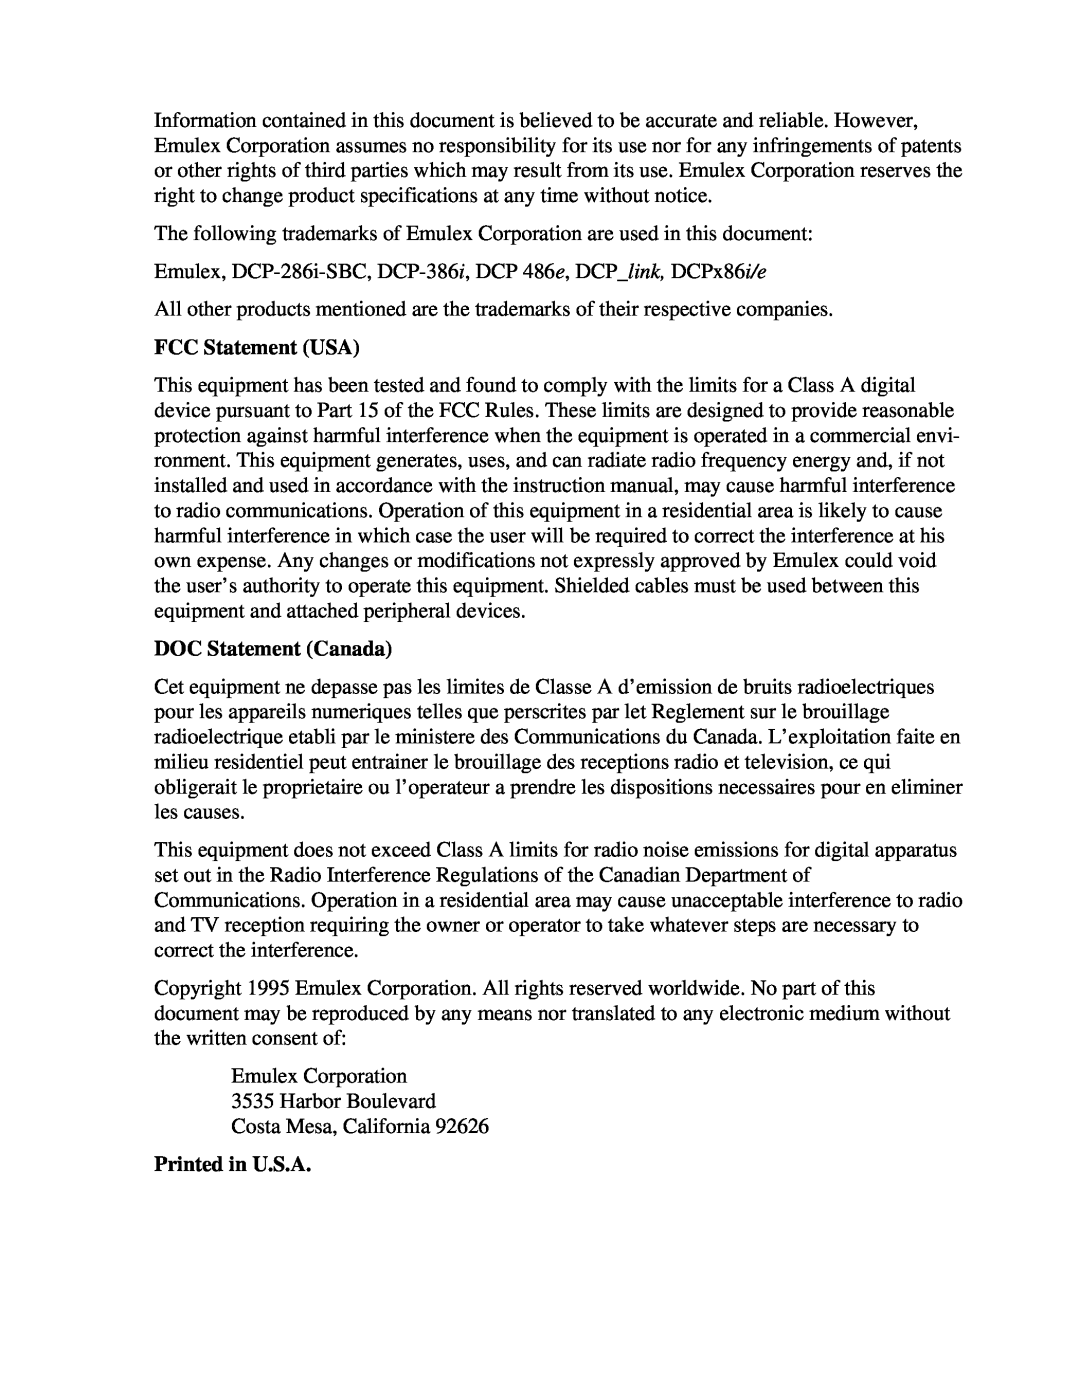 Emulex DCP_link manual FCC Statement USA, DOC Statement Canada, Printed in U.S.A 